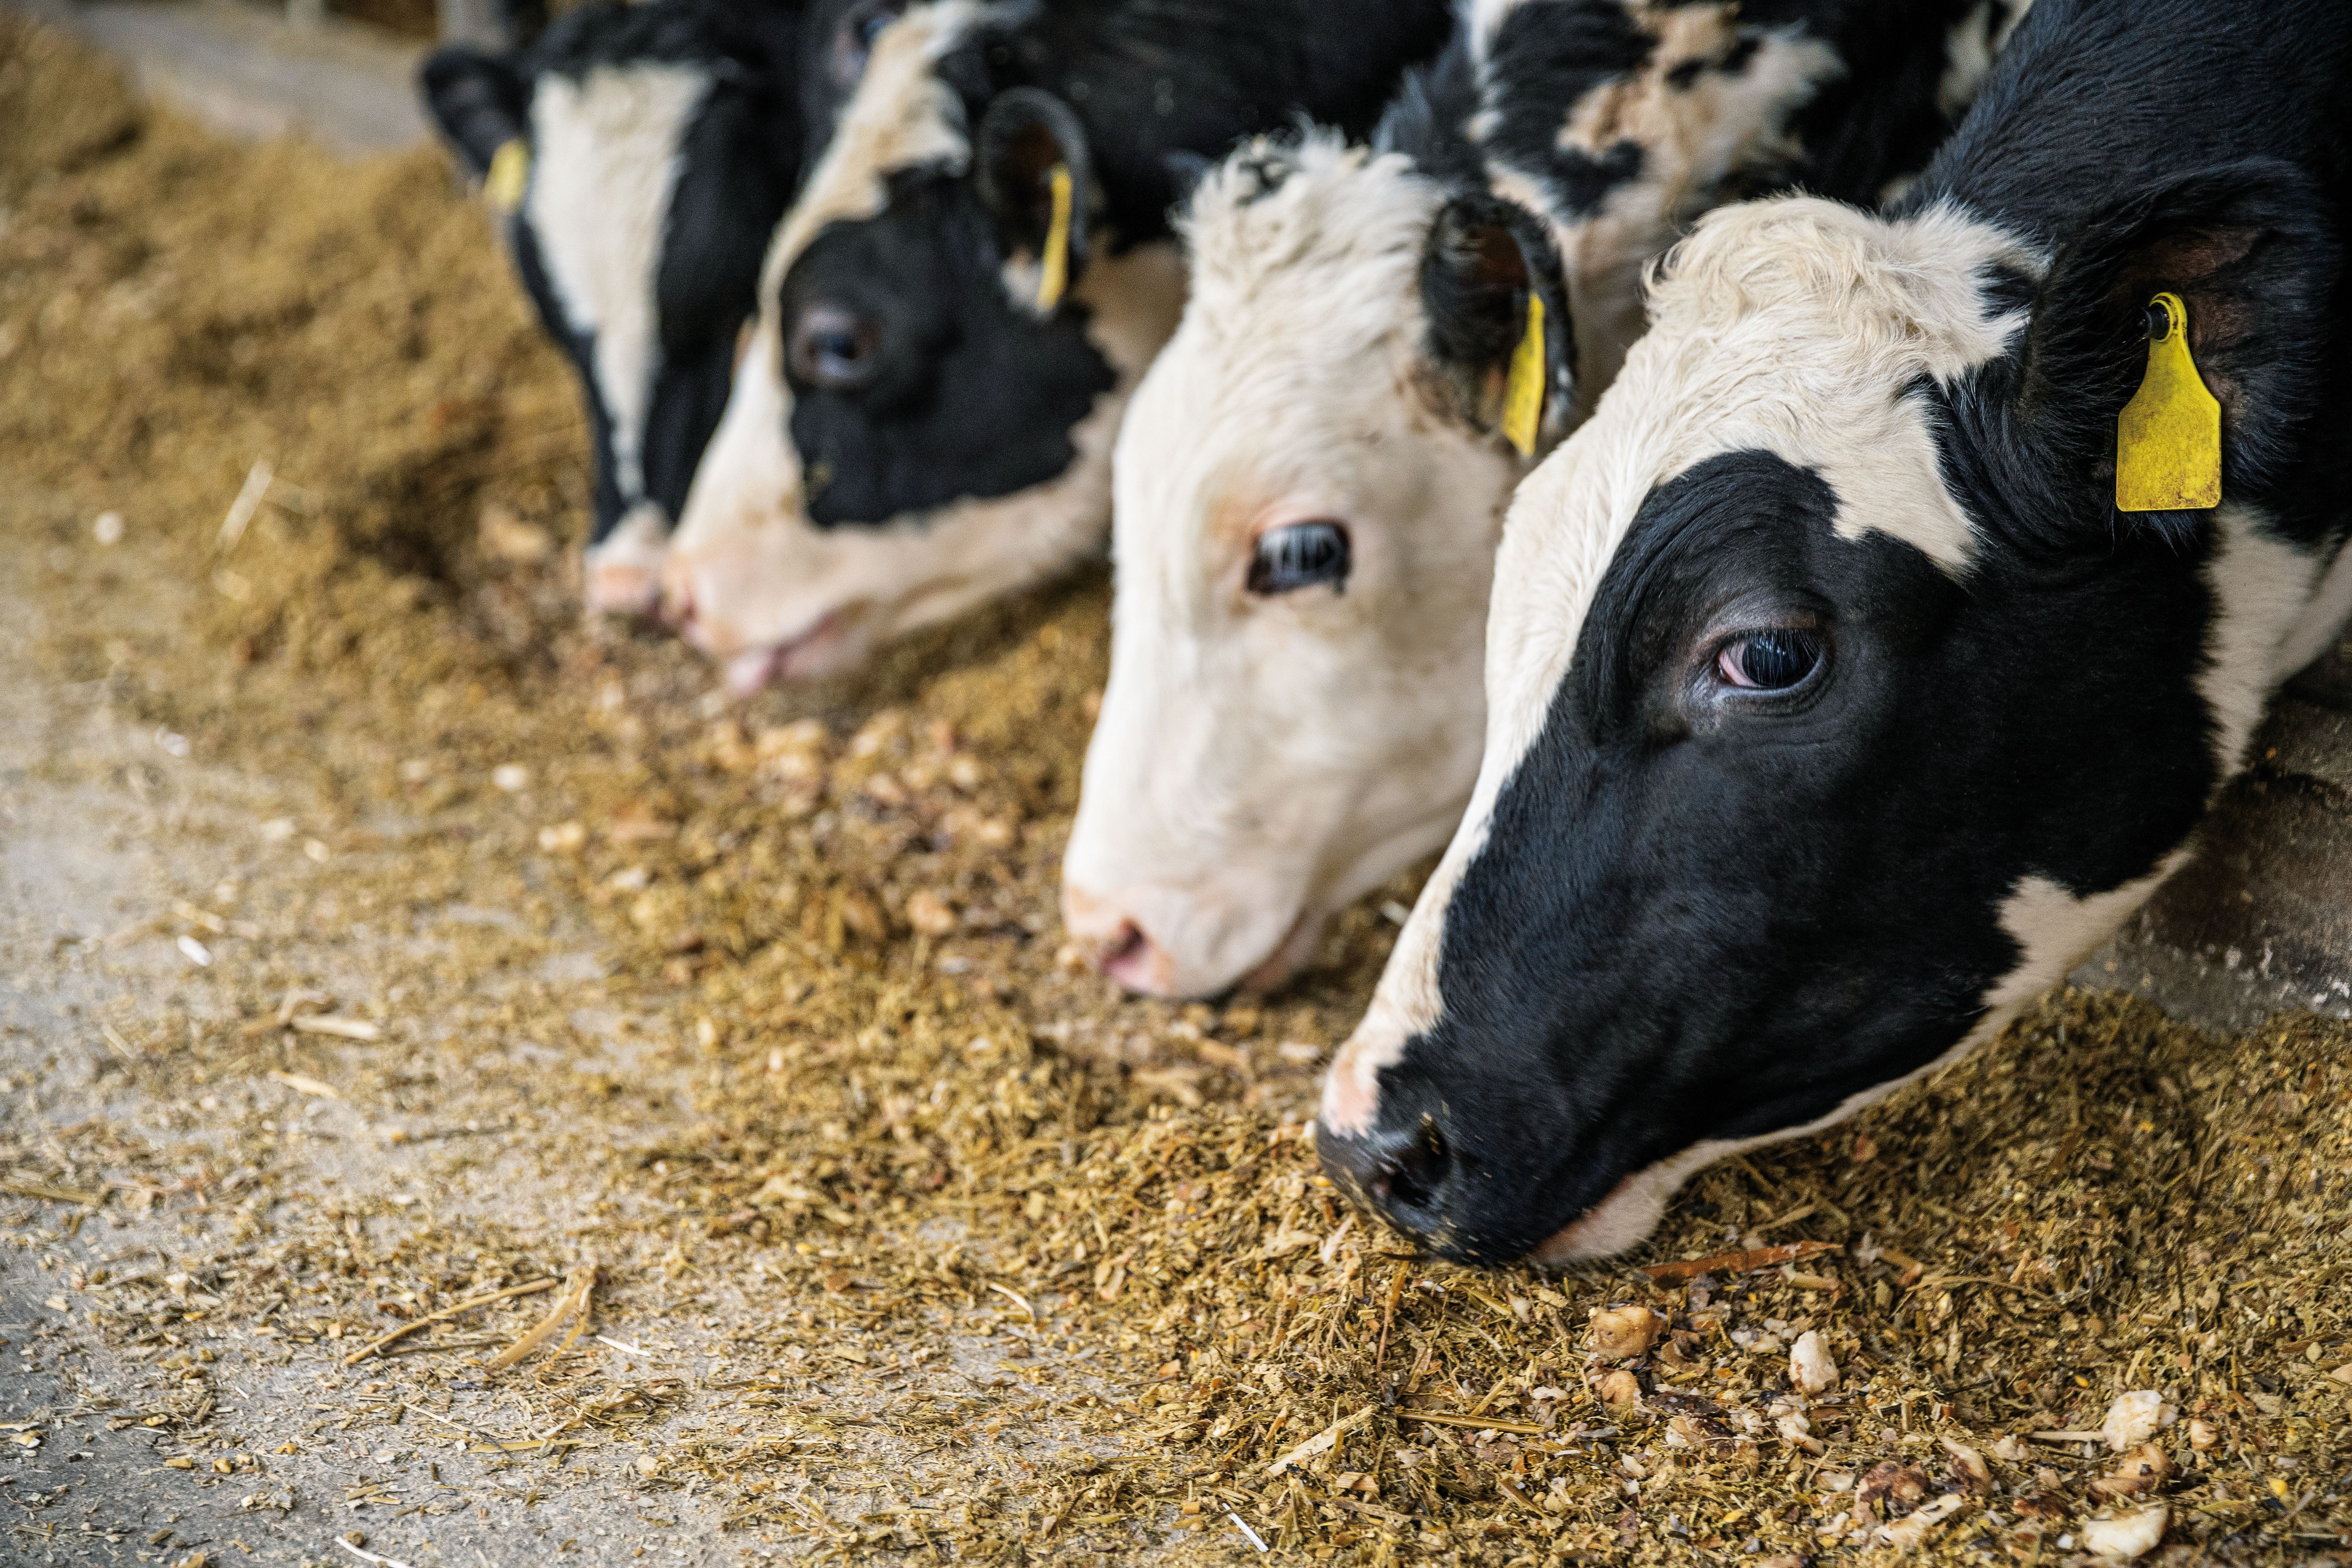 cows-barn-feeding.jpg